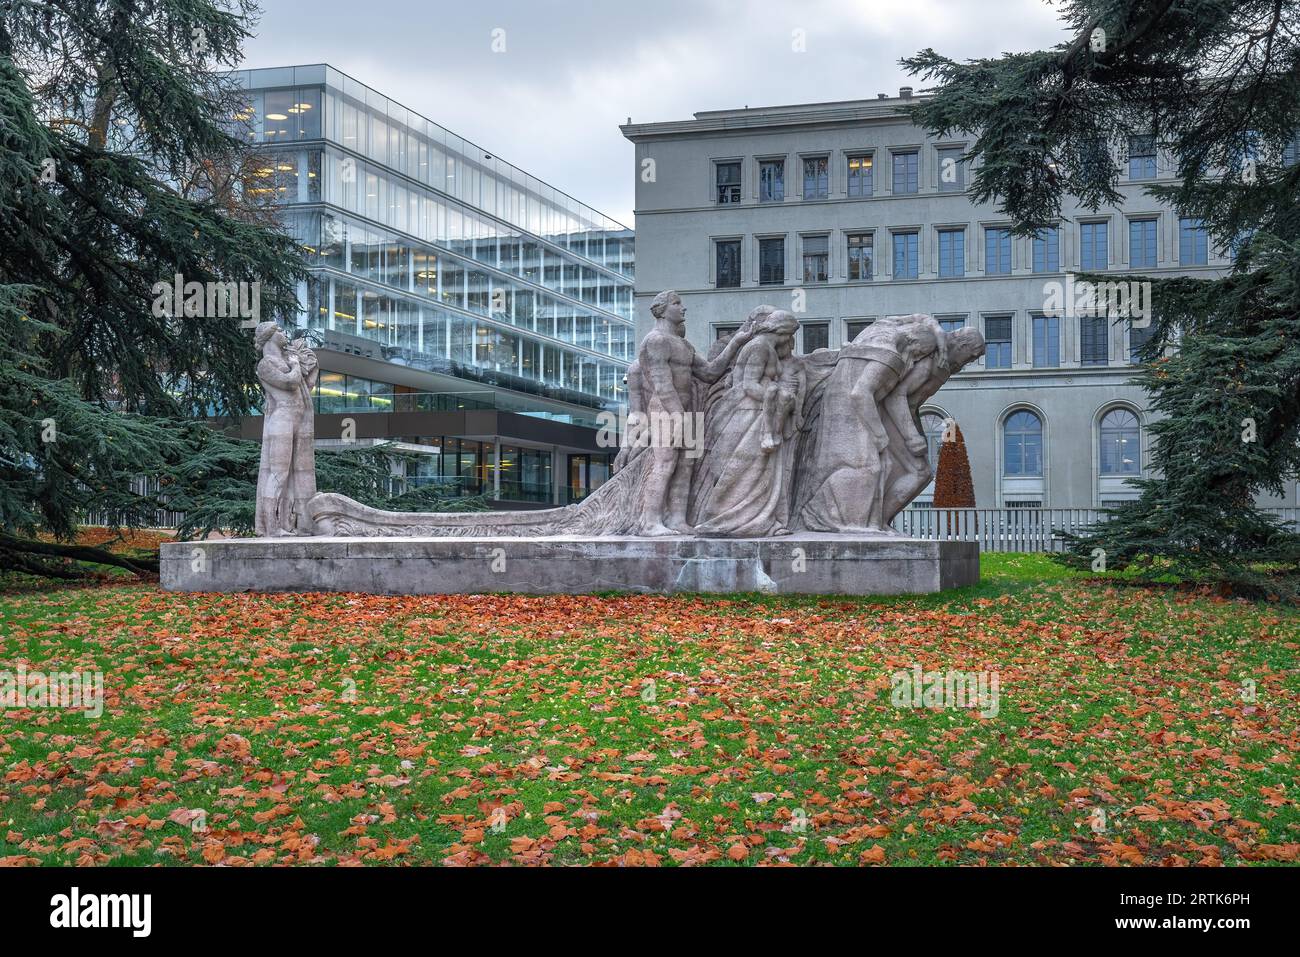 The Human Effort Sculpture by James Vibert - Geneva, Switzerland Stock Photo